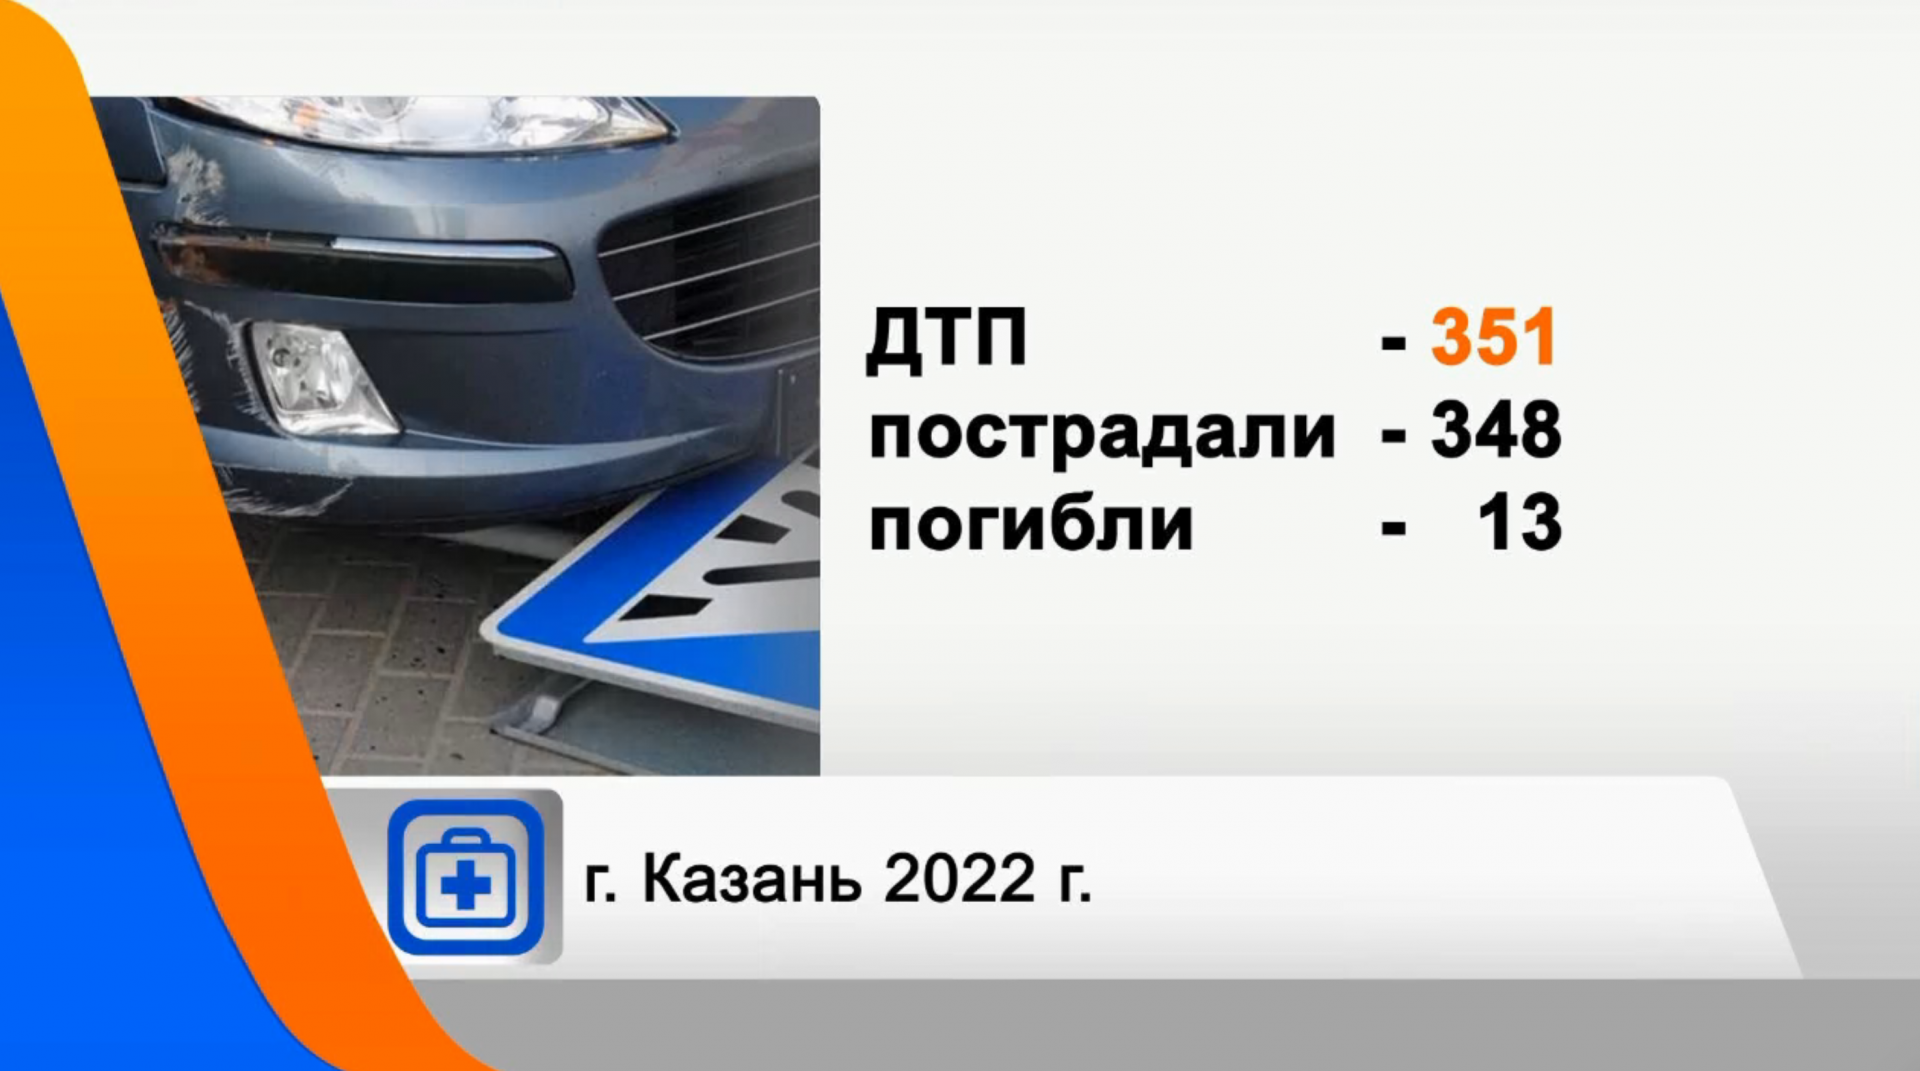 348 человек пострадали в результате ДТП в Казани с начала года